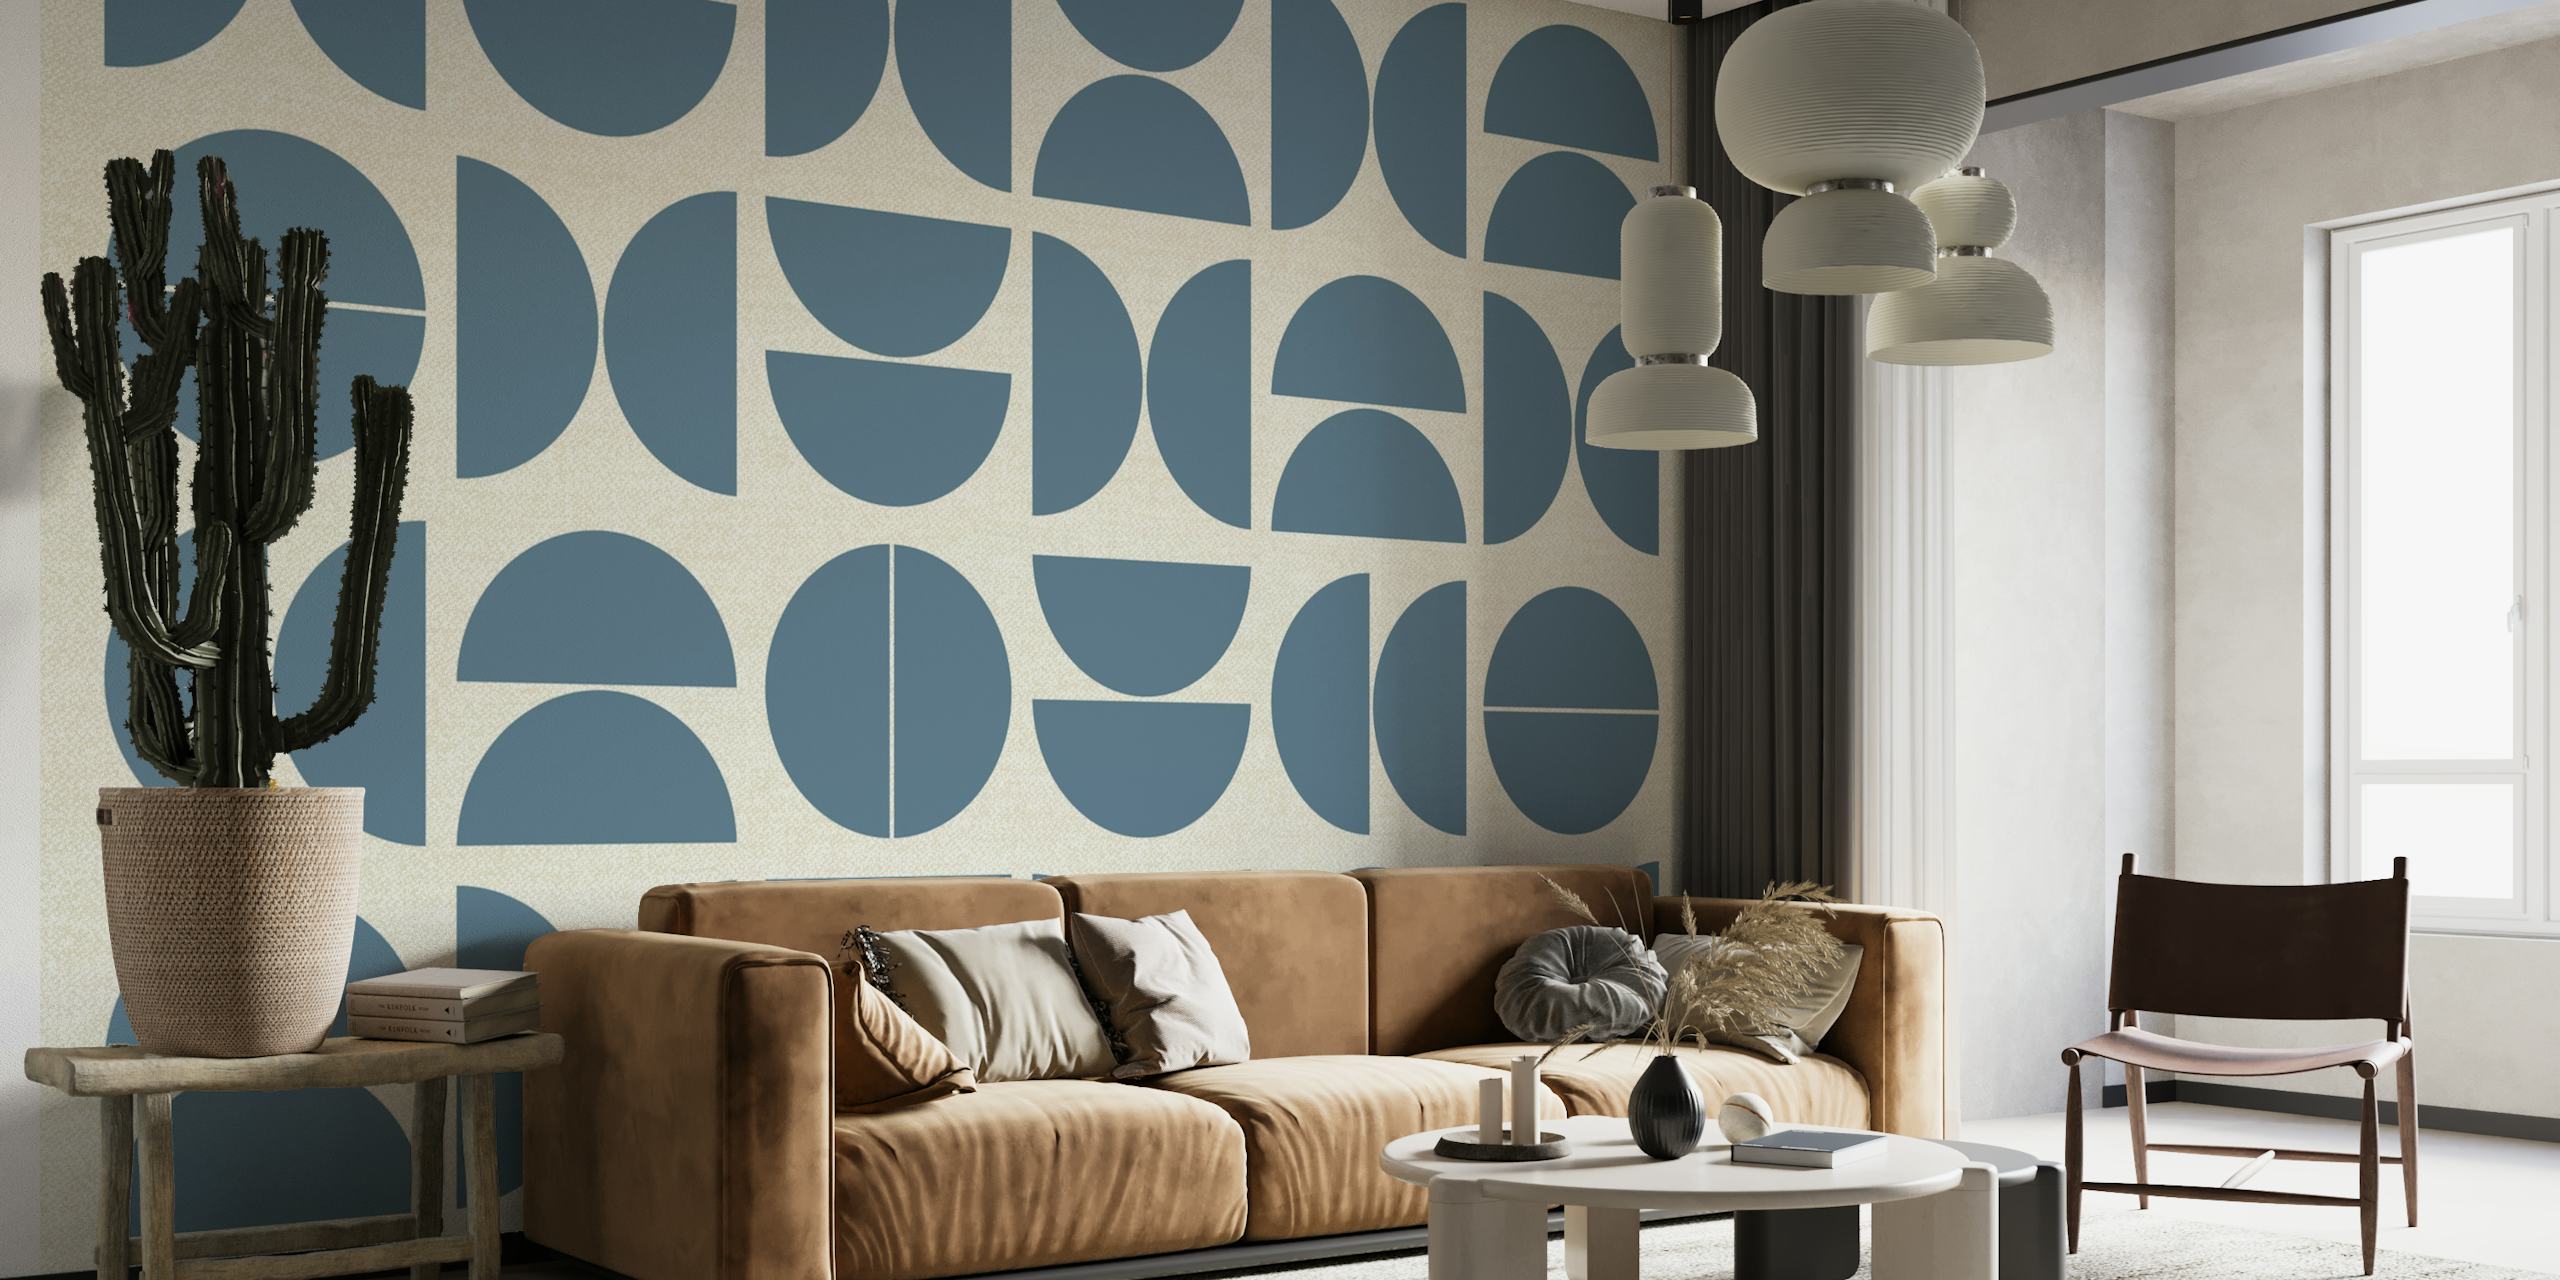 Apstraktna zidna slika u stilu Bauhausa s geometrijskim kružnim uzorcima u nijansama plave